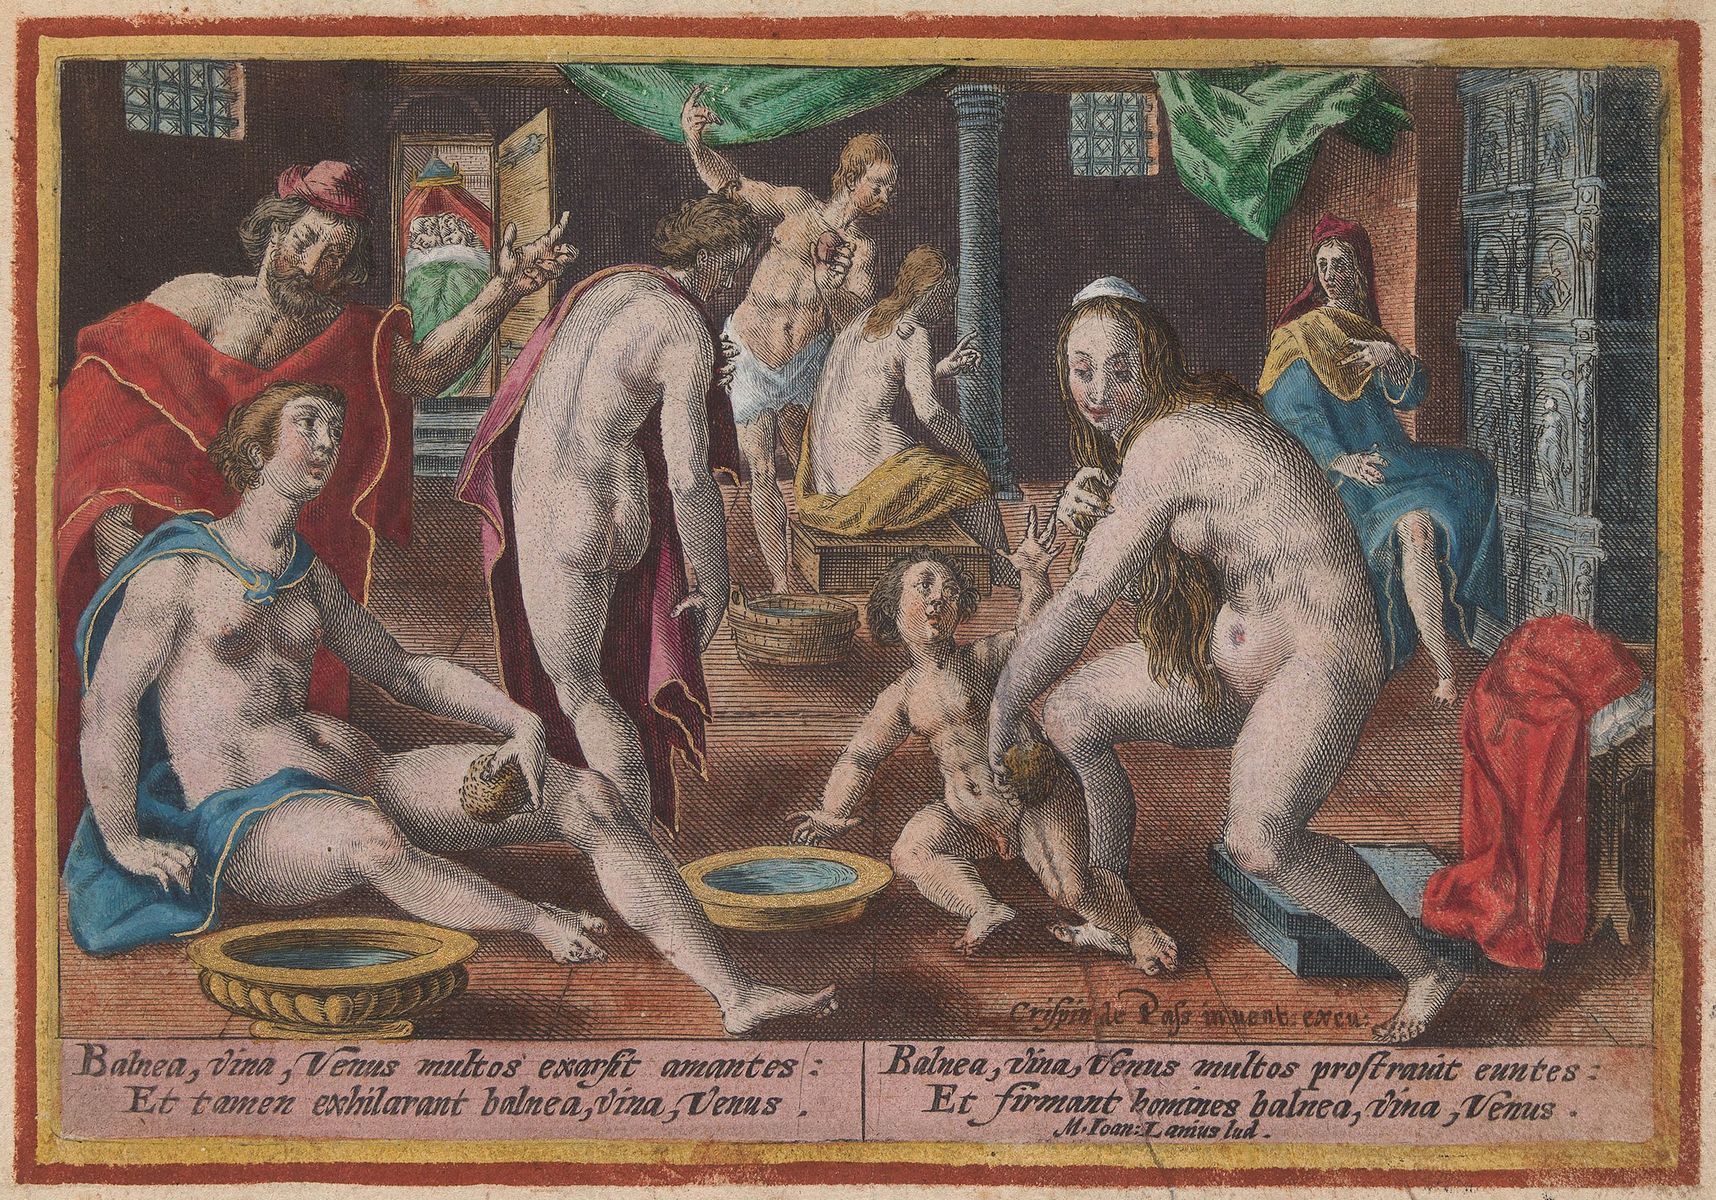 La scène du bain public à Paris de 1671 <!-- START: ConditionalContent -->est commenté en latin : « Les bains, le vin et Vénus brûlent les amants, et pourtant ils rendent heureux. Les bains, le vin et Vénus font trébucher certains, mais rendent les hommes forts ». Un coup d'œil par la petite porte du cabinet voisin explique où la Vénus remplit sa mission.<!-- END: ConditionalContent --> Collection Koninklijke Bibliotheek. Public domain